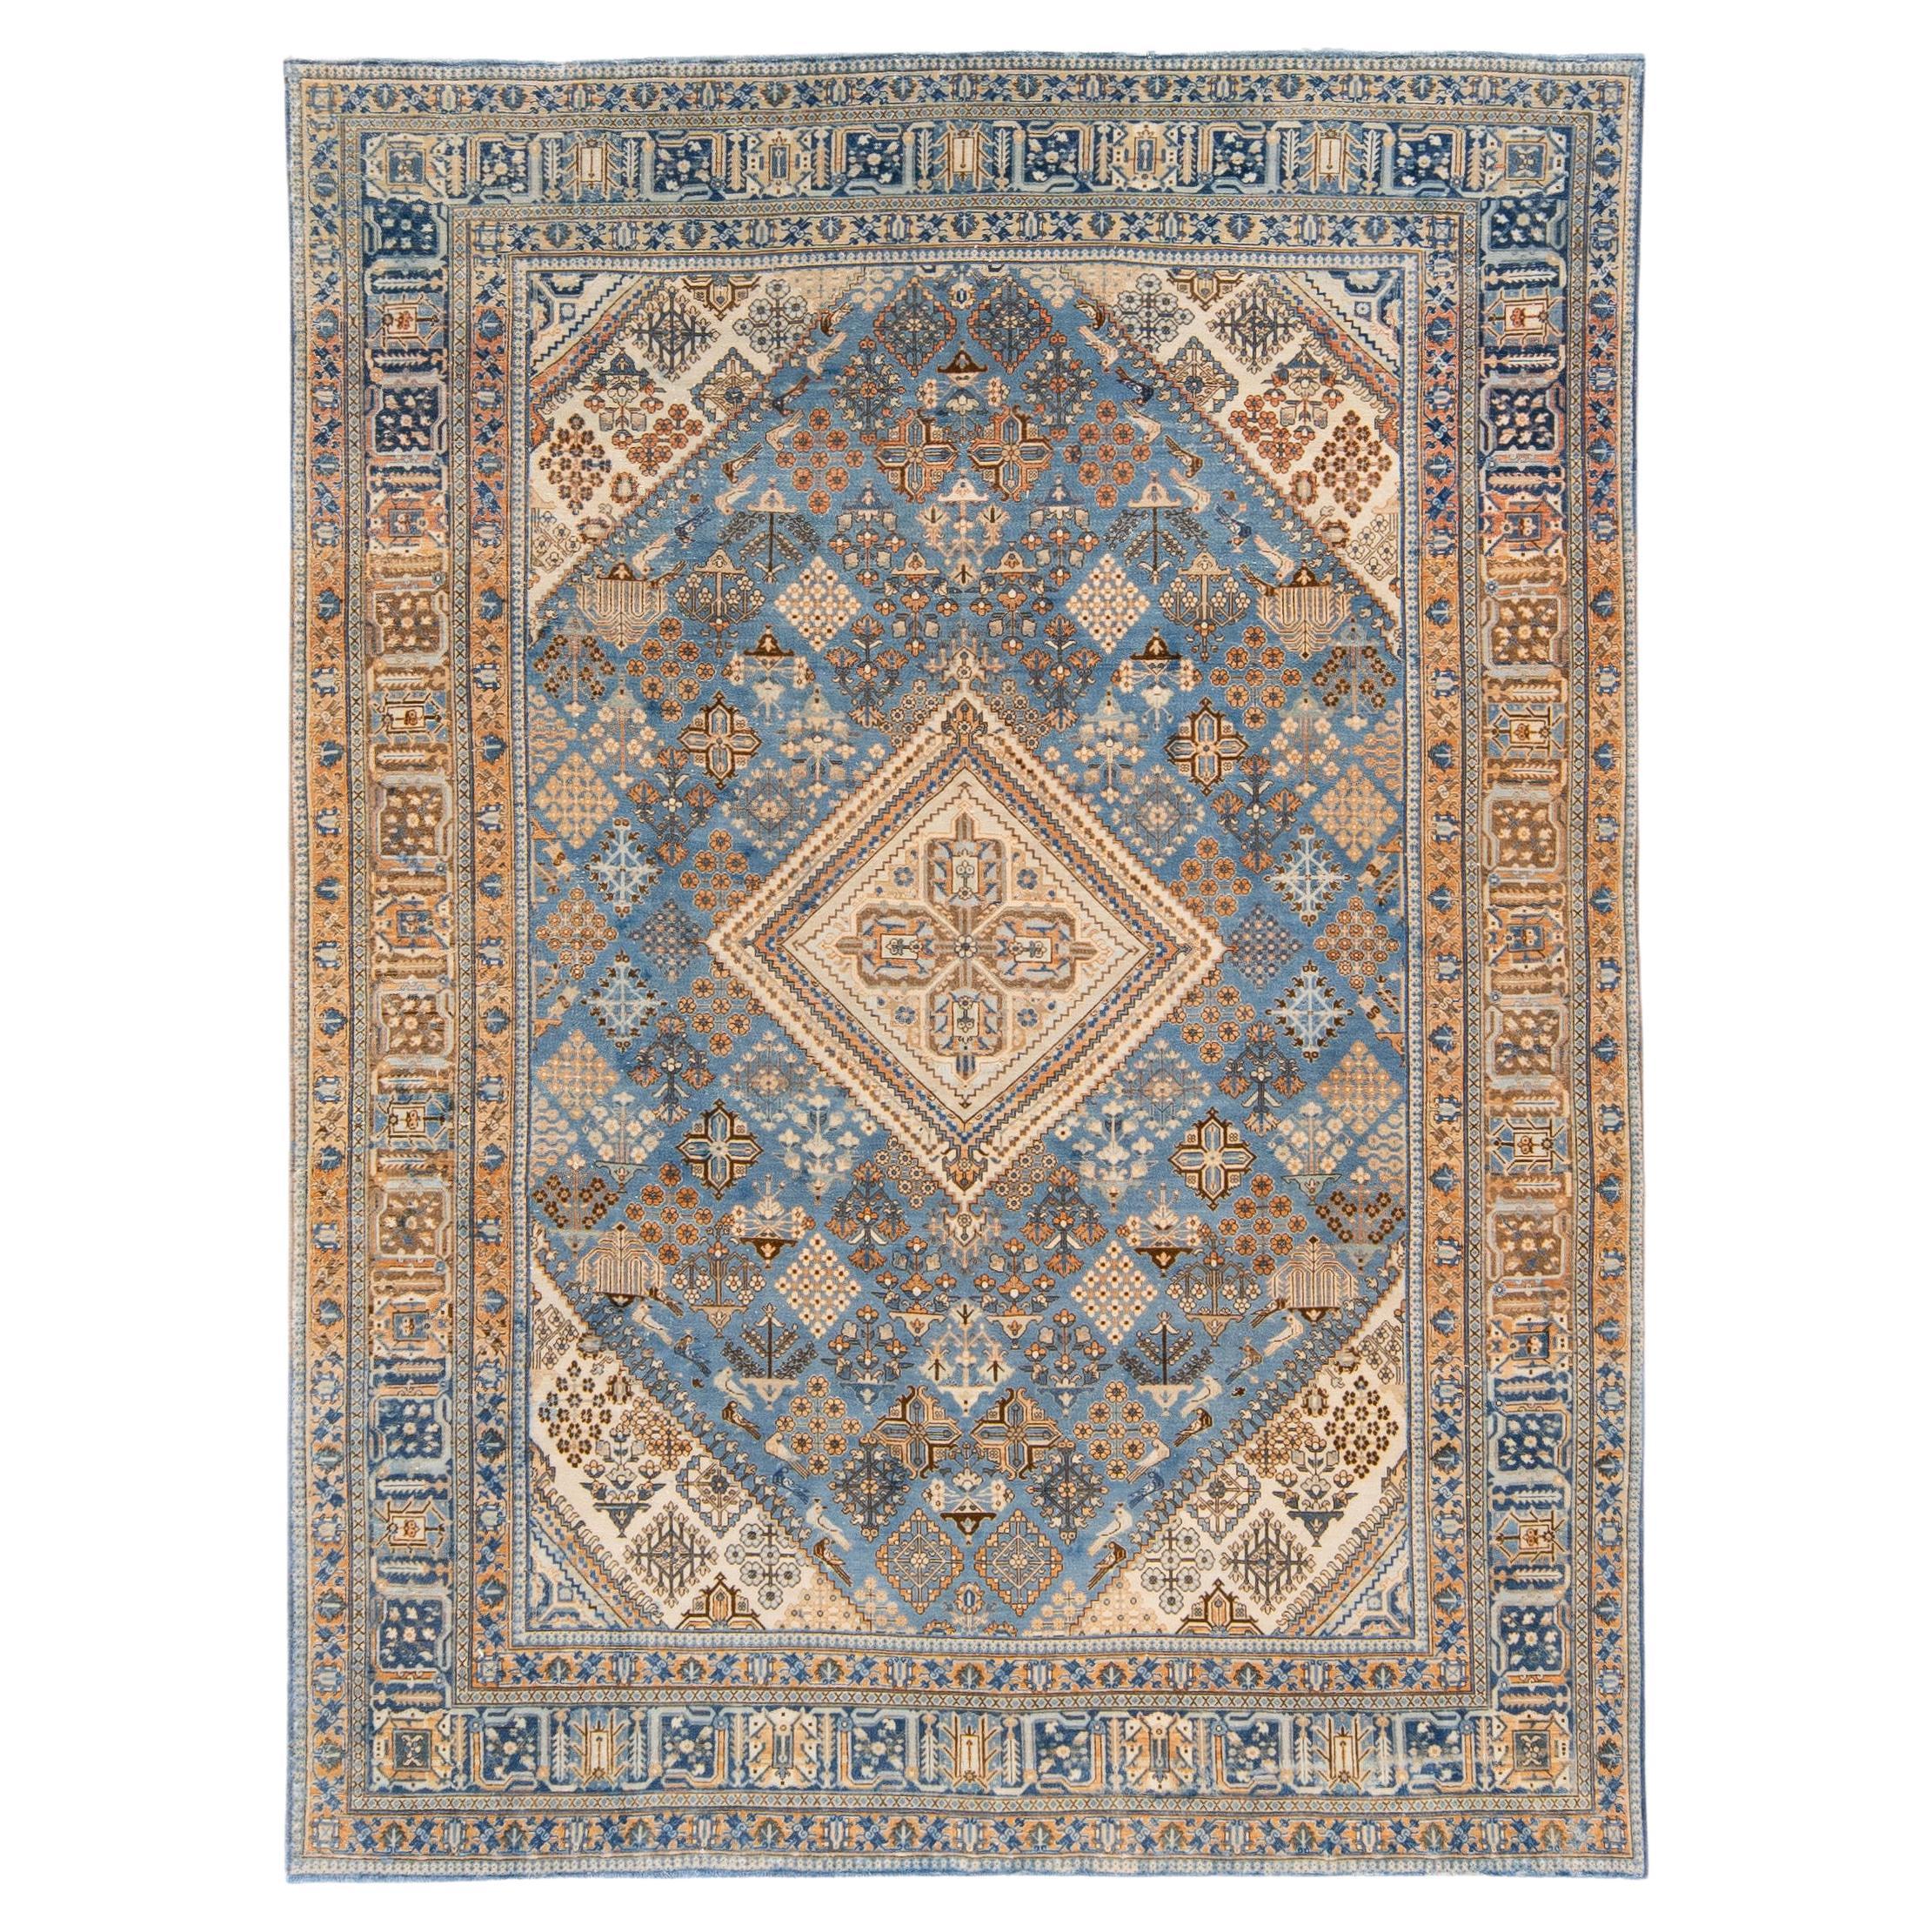 Antiker handgefertigter antiker türkisblauer Teppich aus persischer Wolle